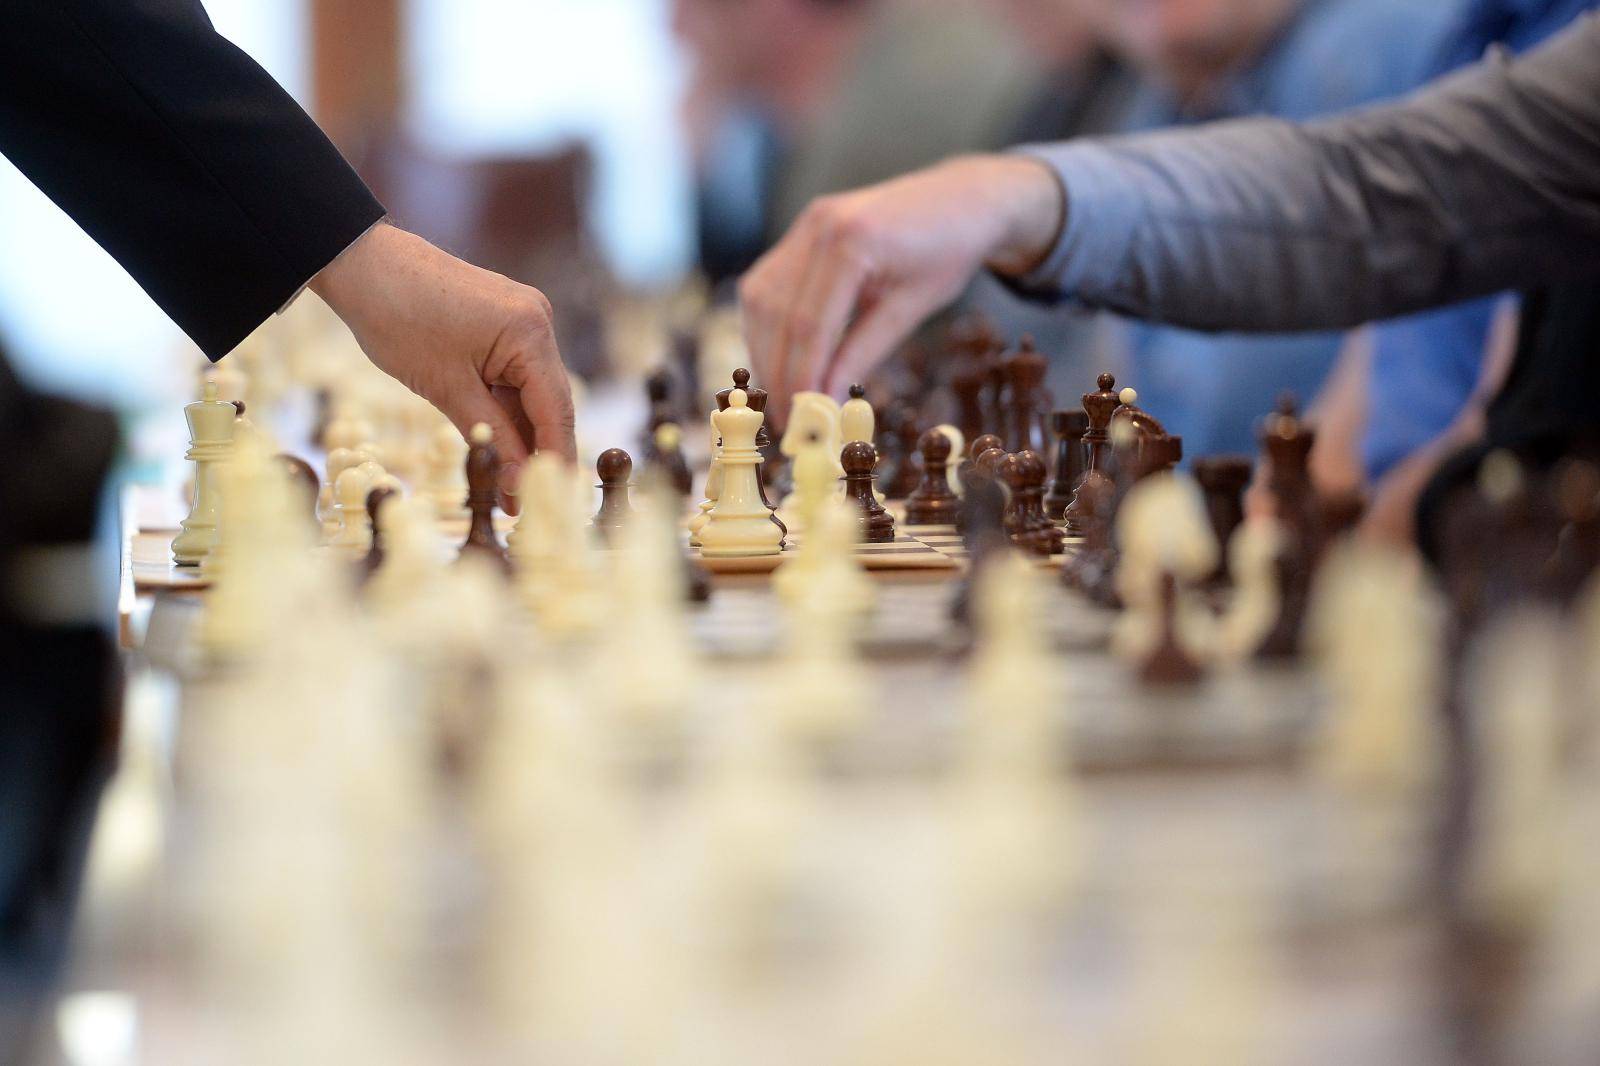 Danas zaigrajte šah i dobro se zabavite u staroj strateškoj igri